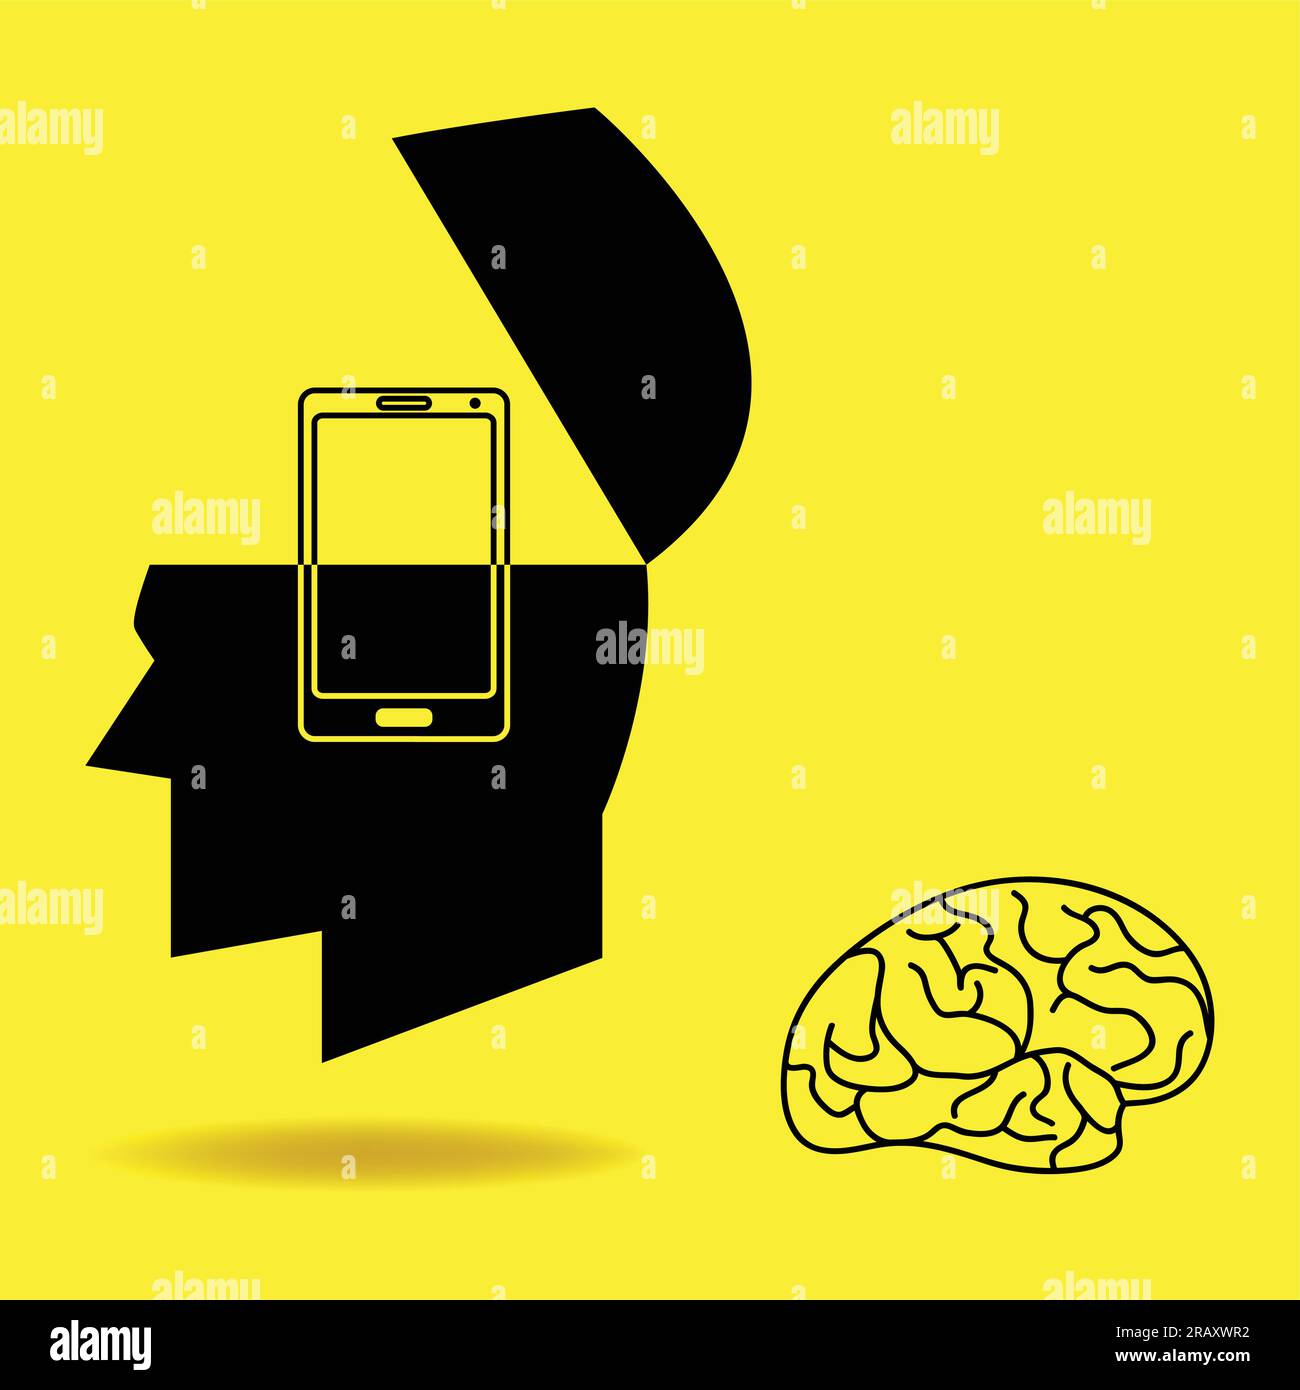 Grafische Darstellung des menschlichen Gehirns, das durch ein Smartphone ersetzt wird Stock Vektor